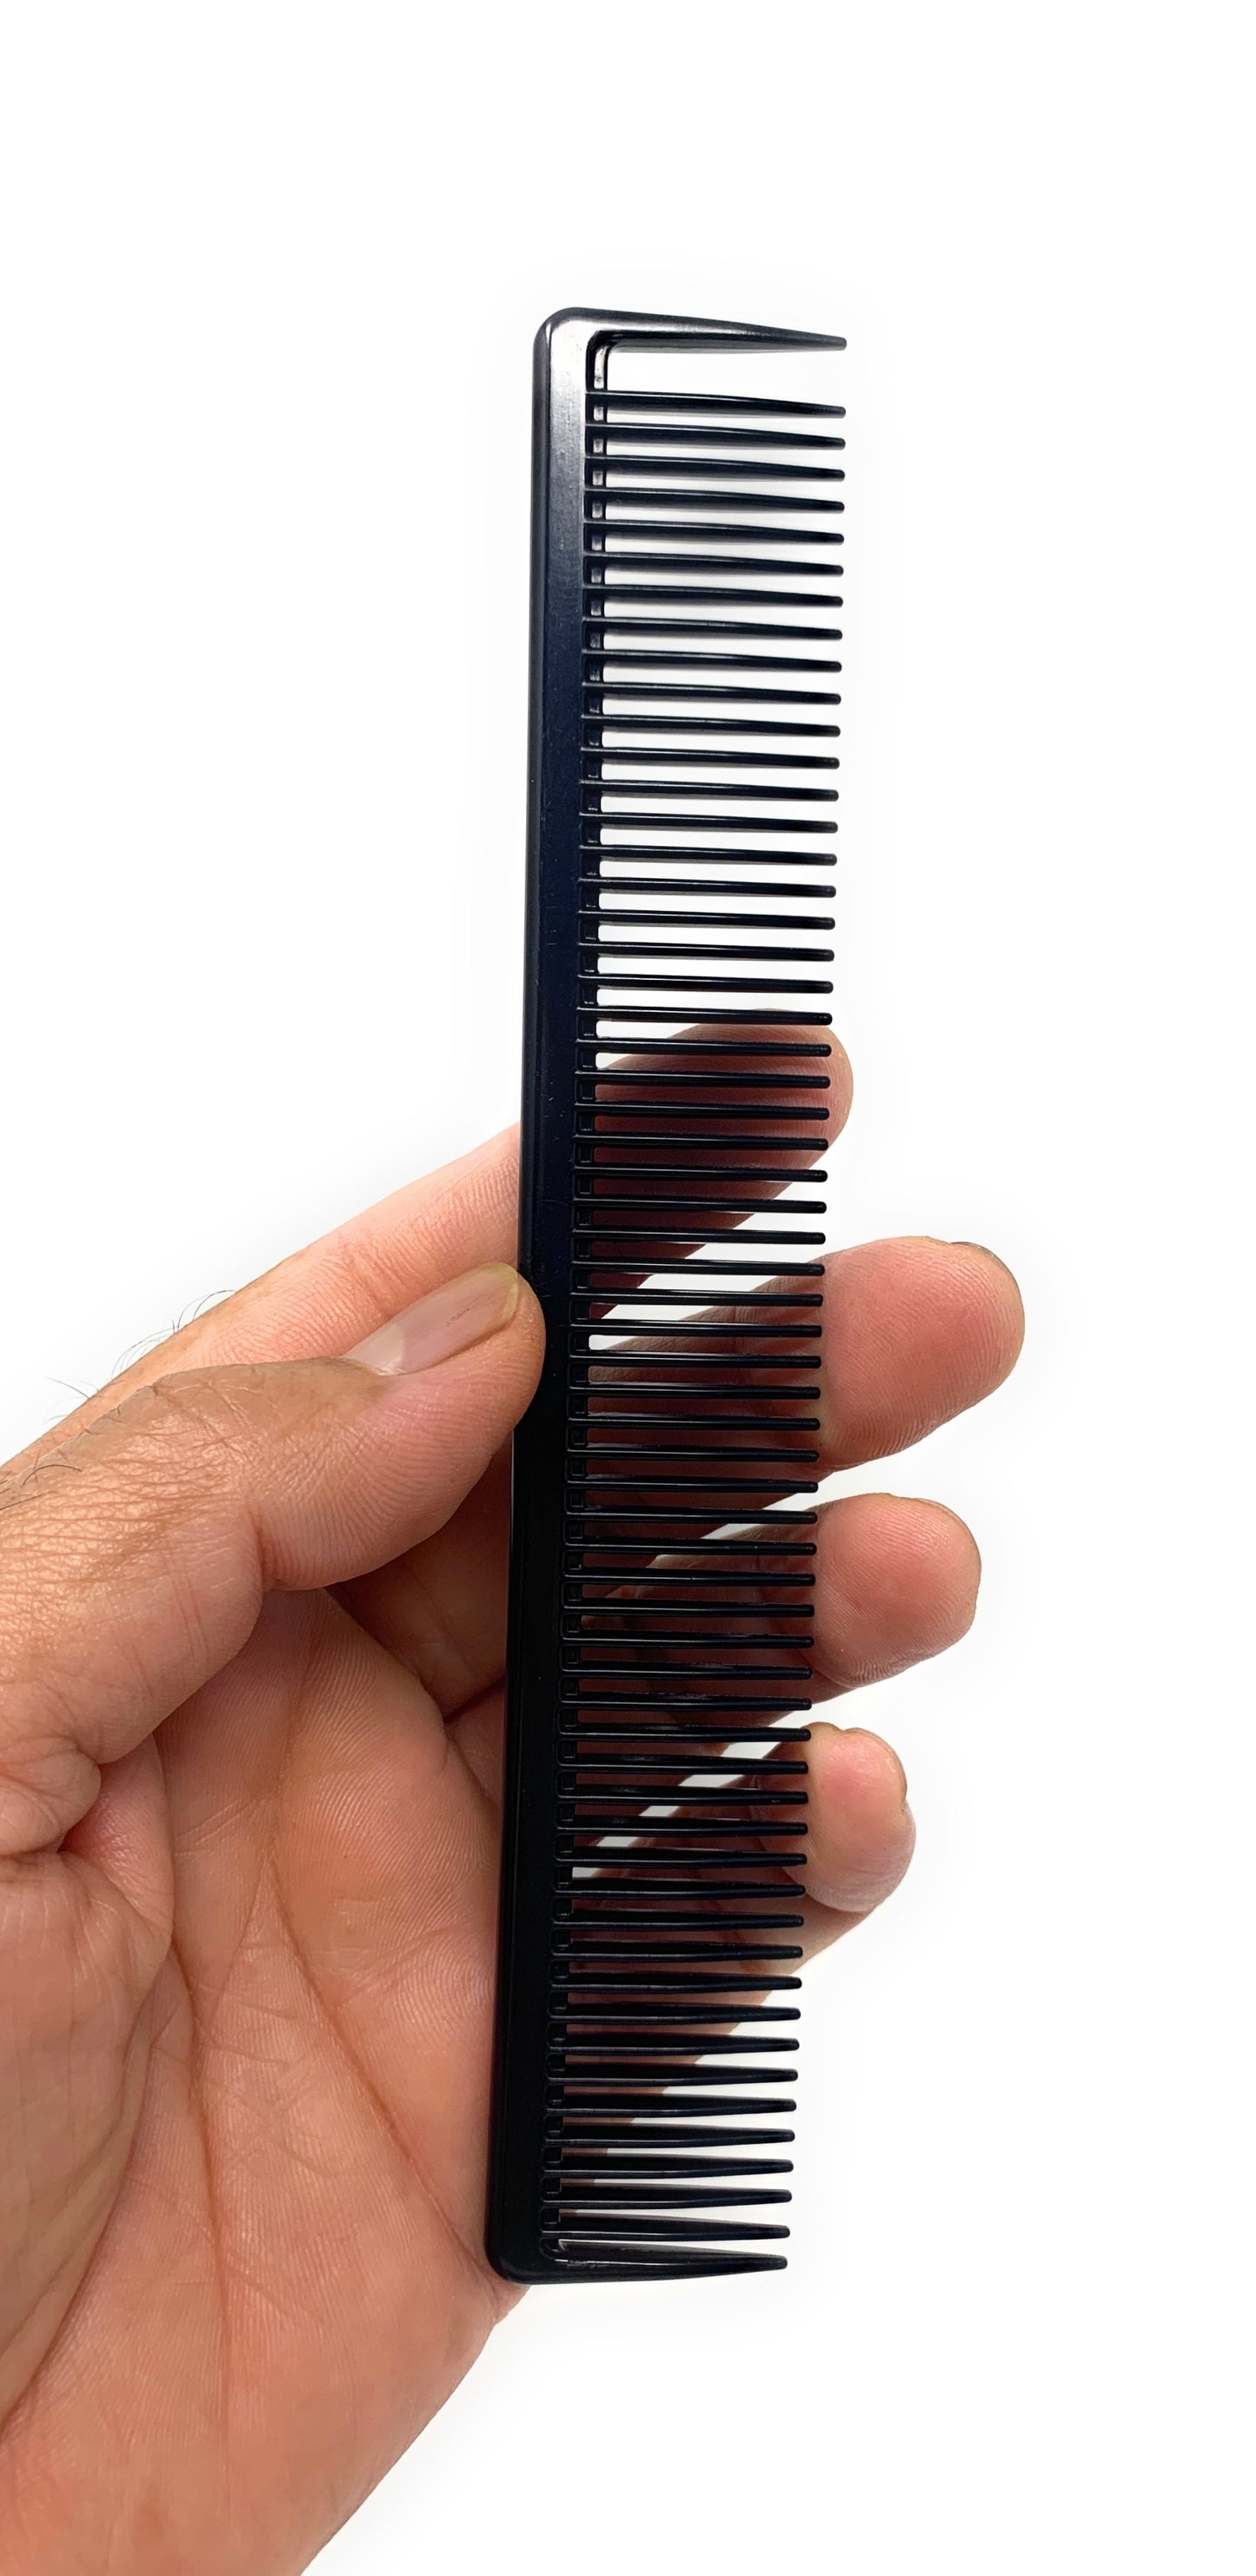 Scalpmaster Barber Combs Set Carbon Comb Set Cutting Combs Set 6 pk.